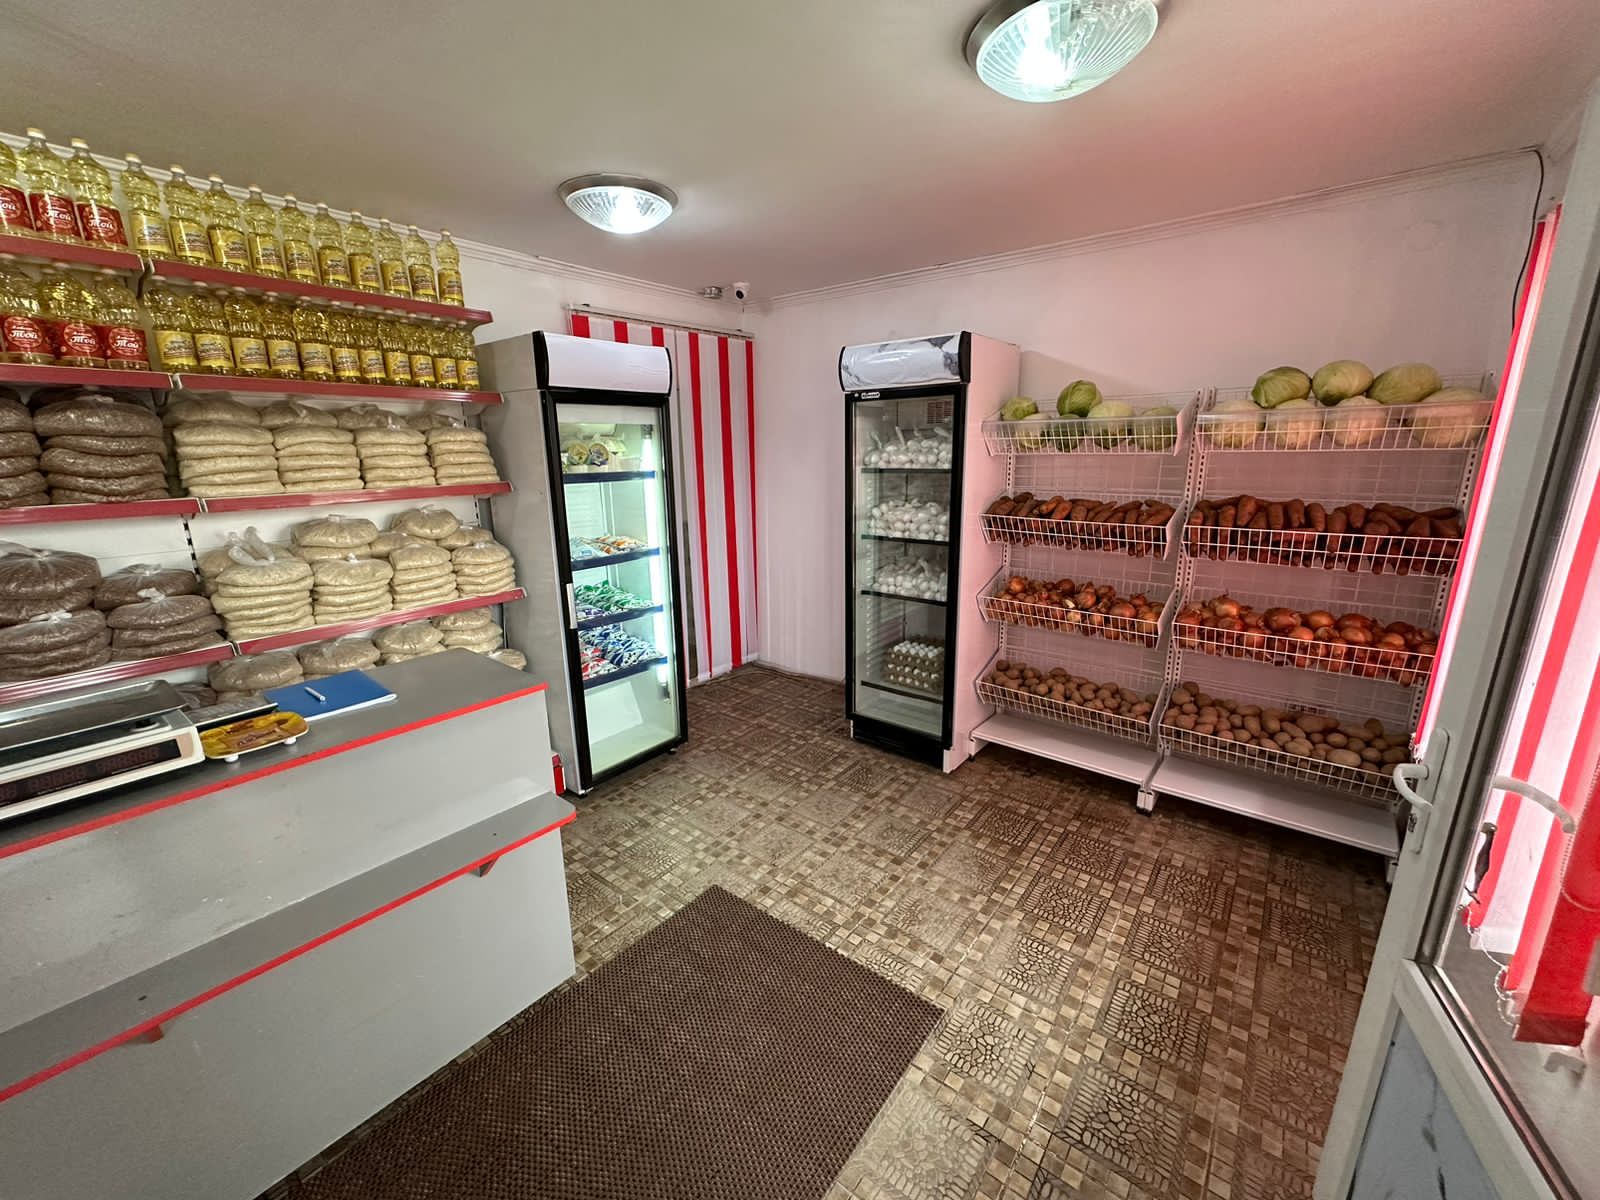 Социальные магазины открыли в Талдыкоргане